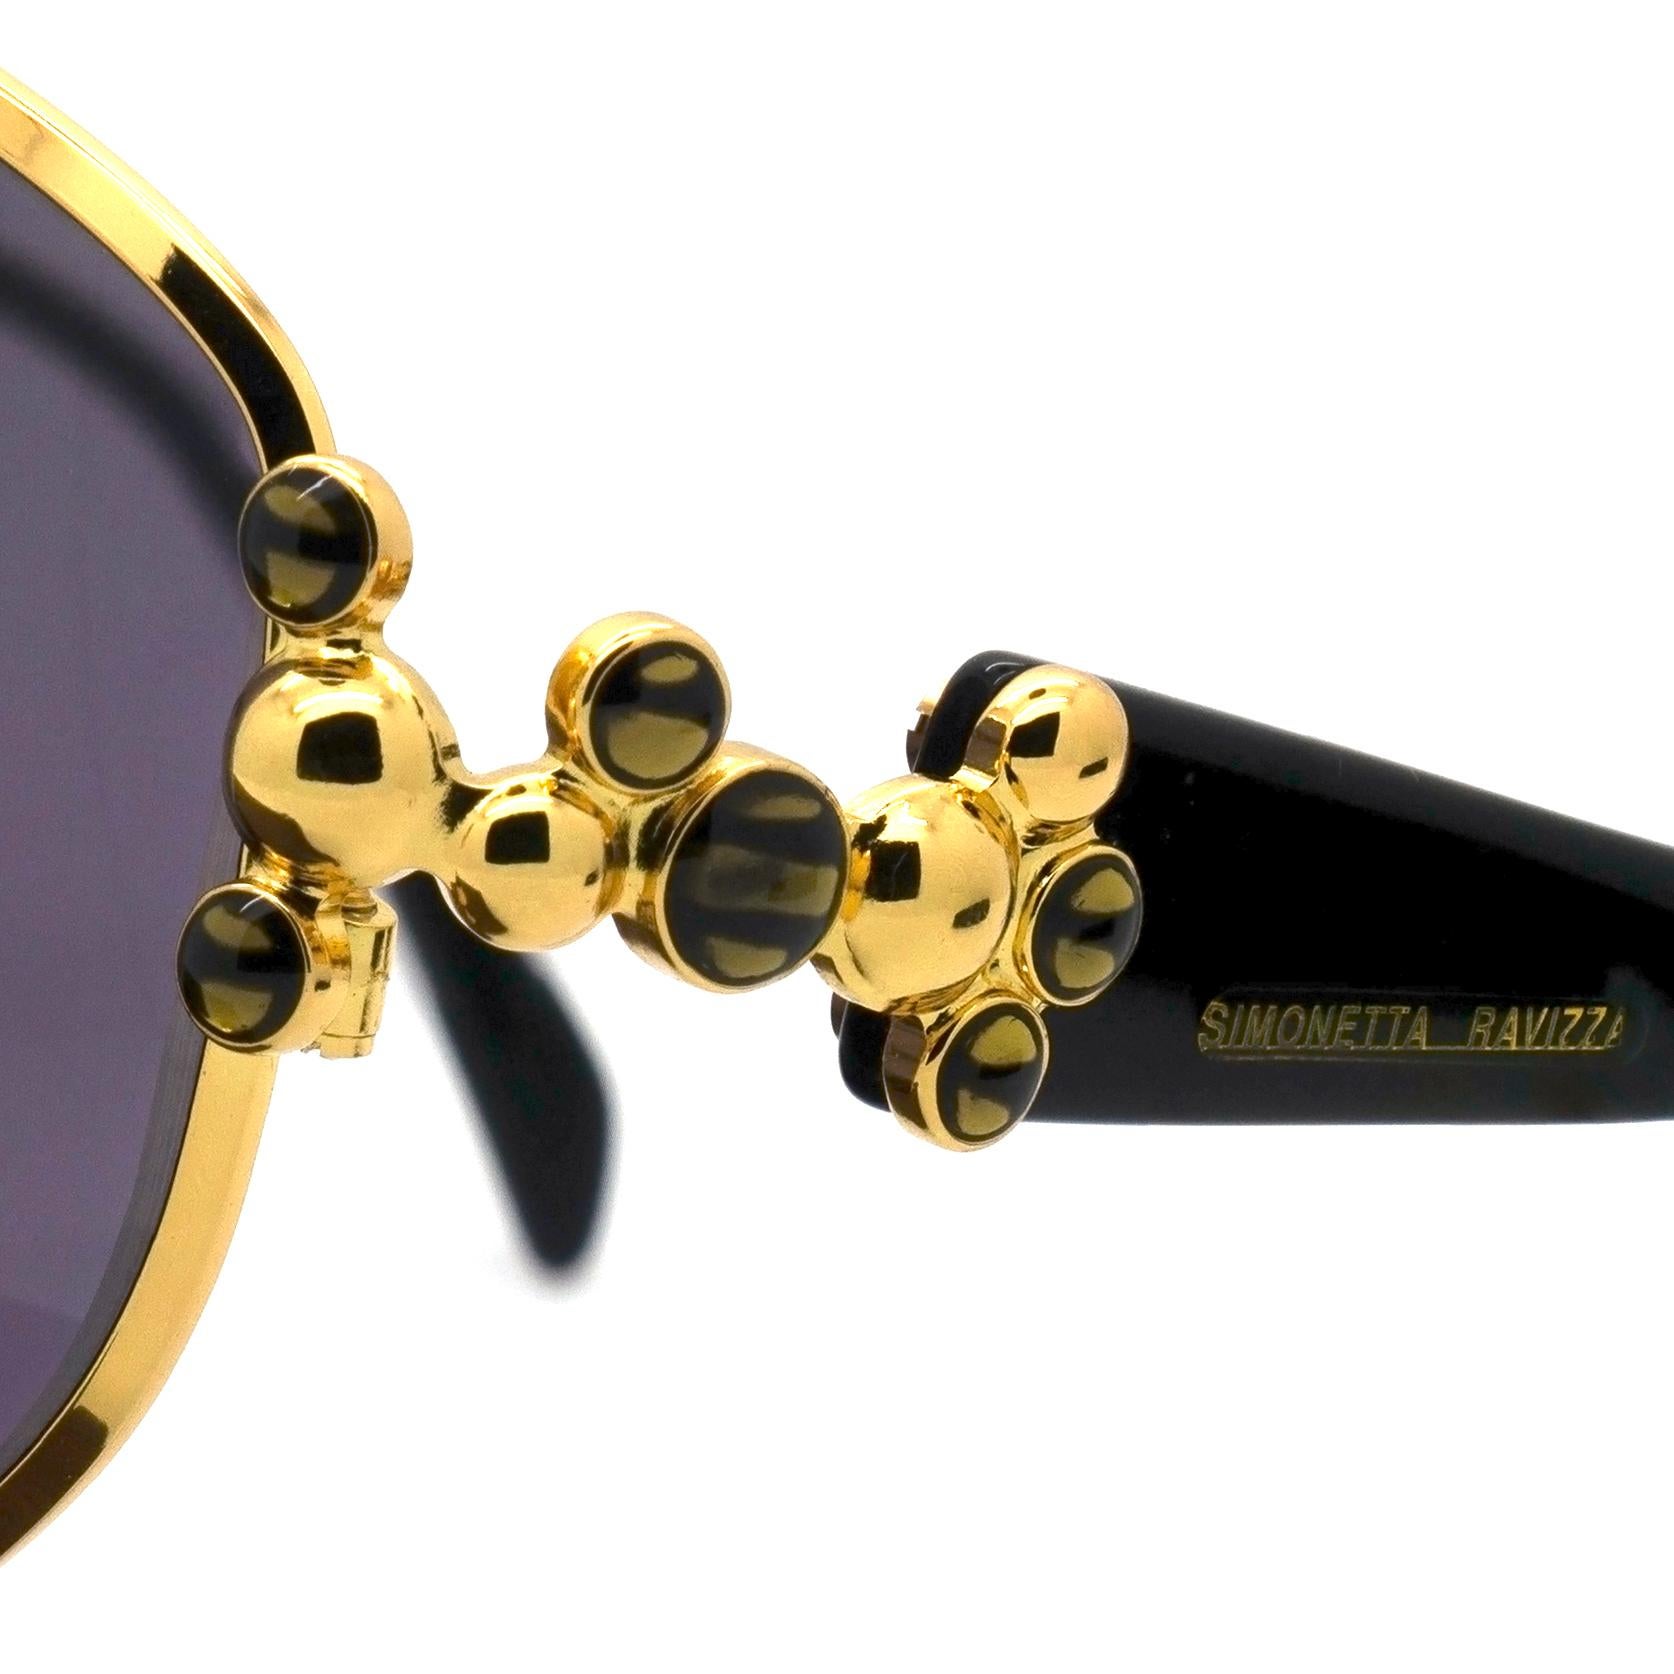 Simonetta Ravizza vintage sunglasses for women 1980s In New Condition For Sale In Santa Clarita, CA